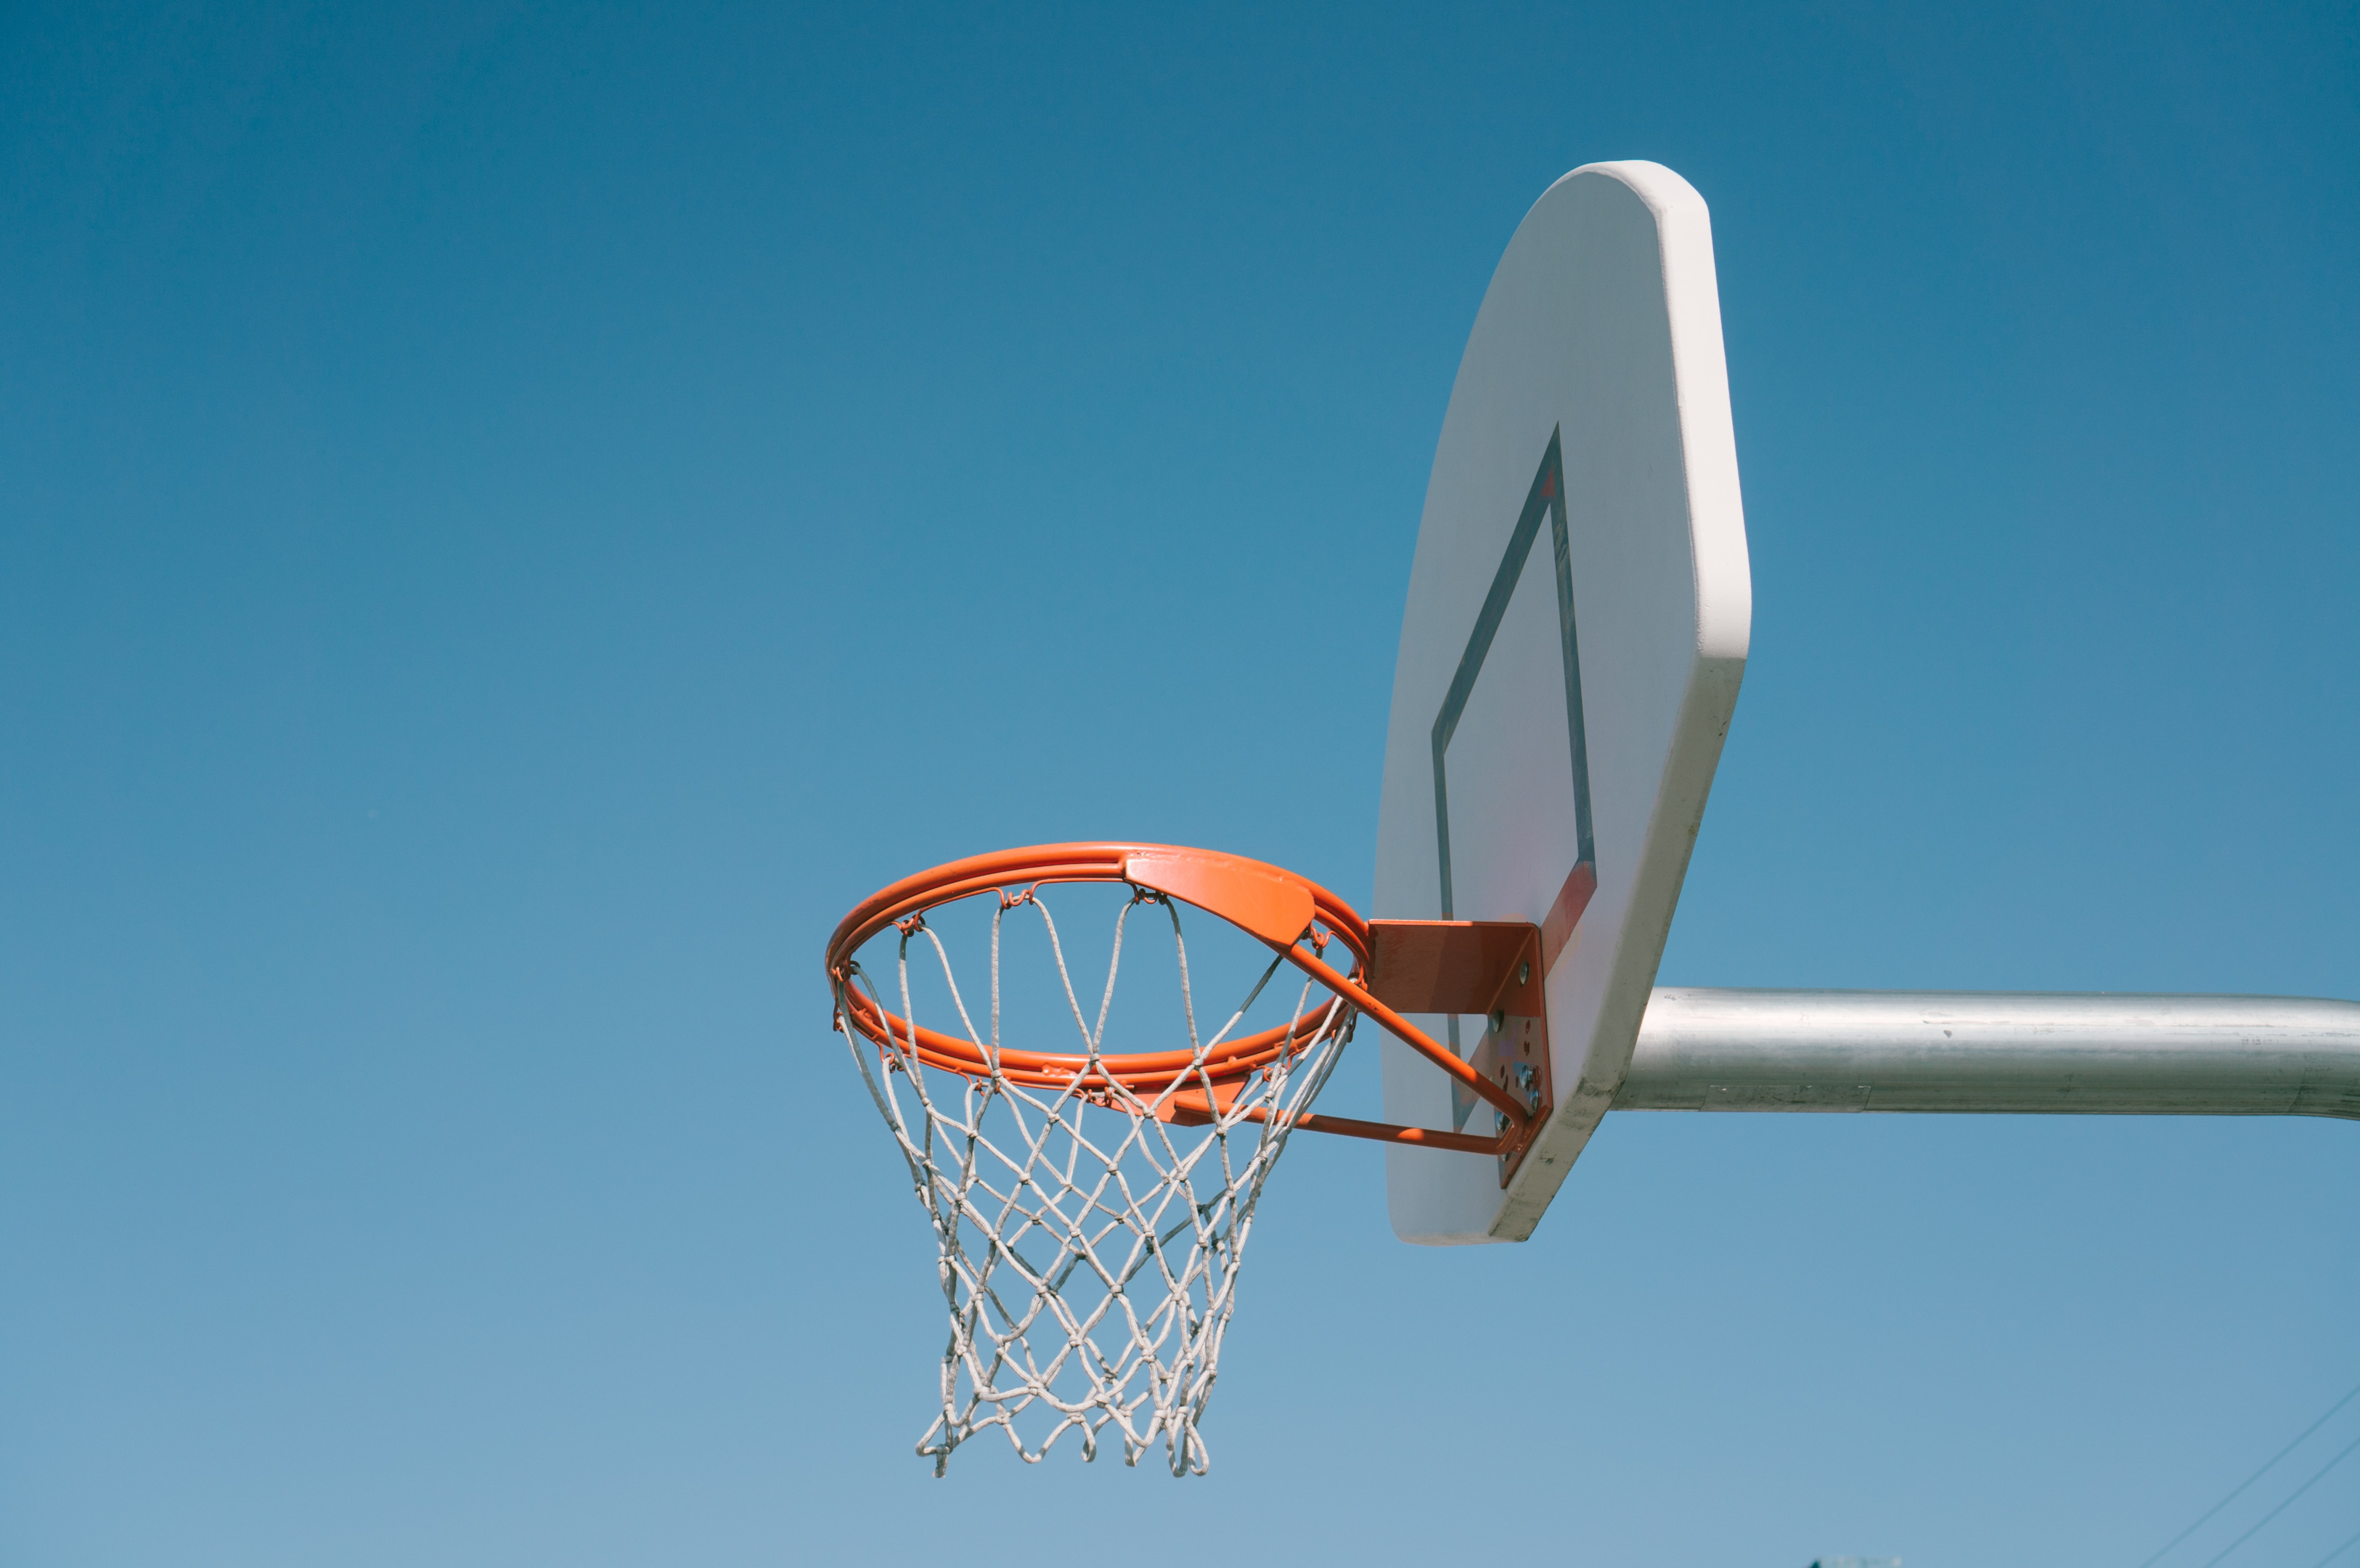 Outdoor basketball hoop, net, and backboard